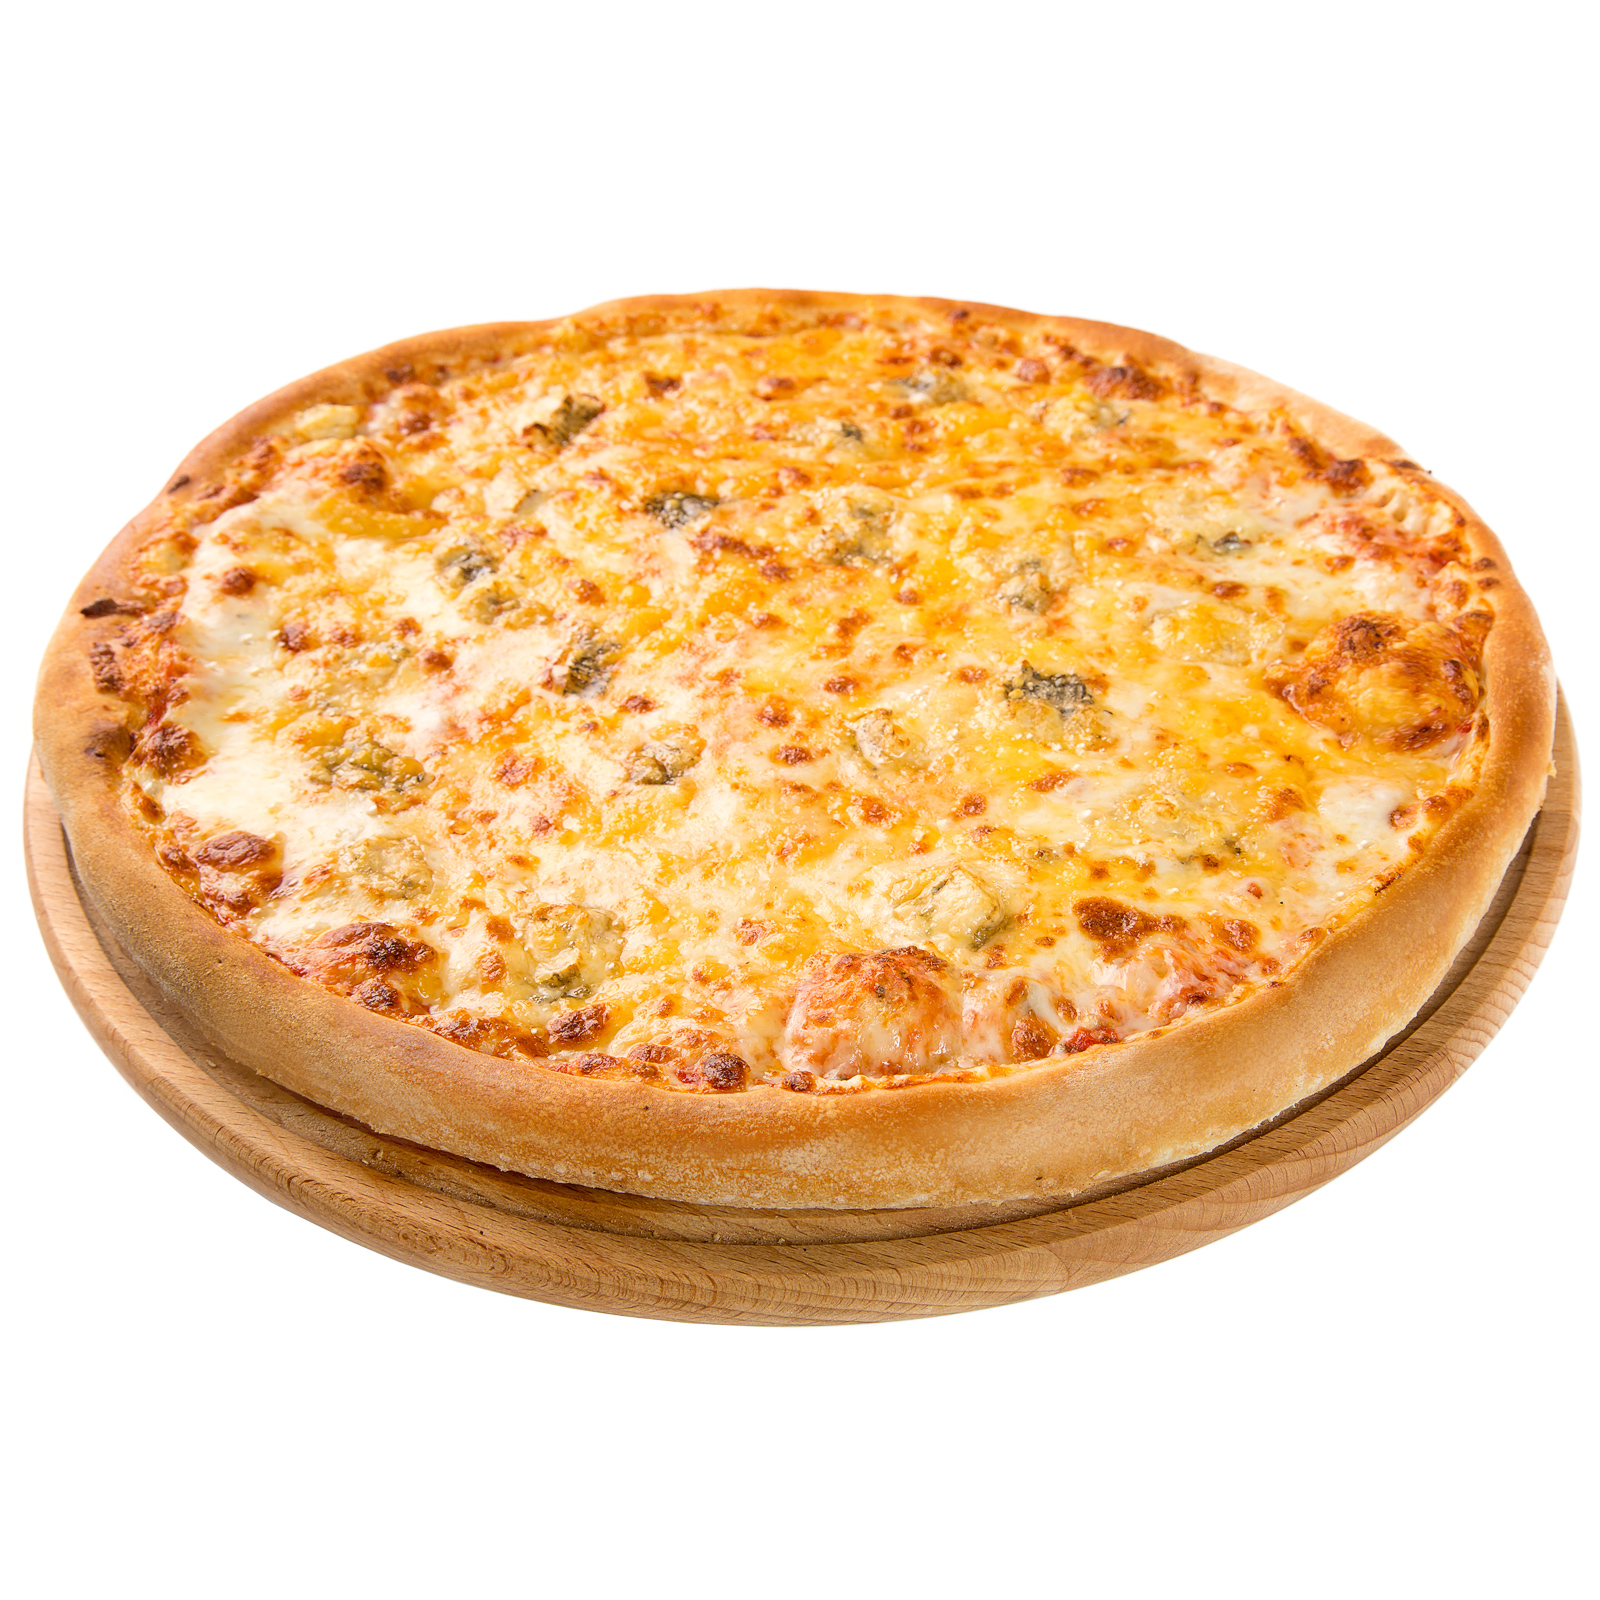 заказать пиццу четыре сыра в москве с доставкой на дом фото 73